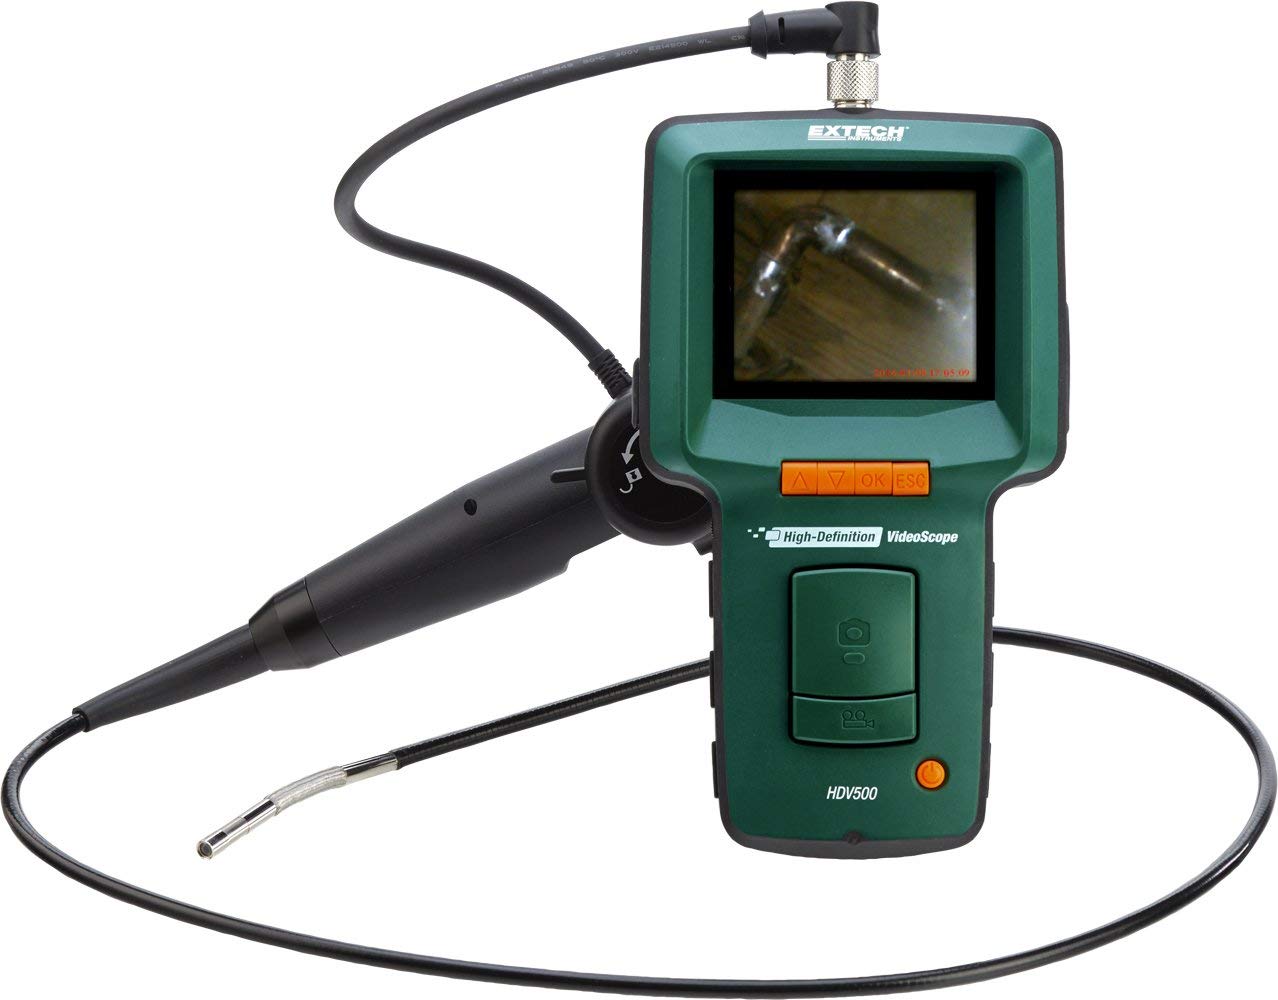 Extech HDV540 schwenkbares Endoskop hochauflösendes Videoskop Zoom Speicher